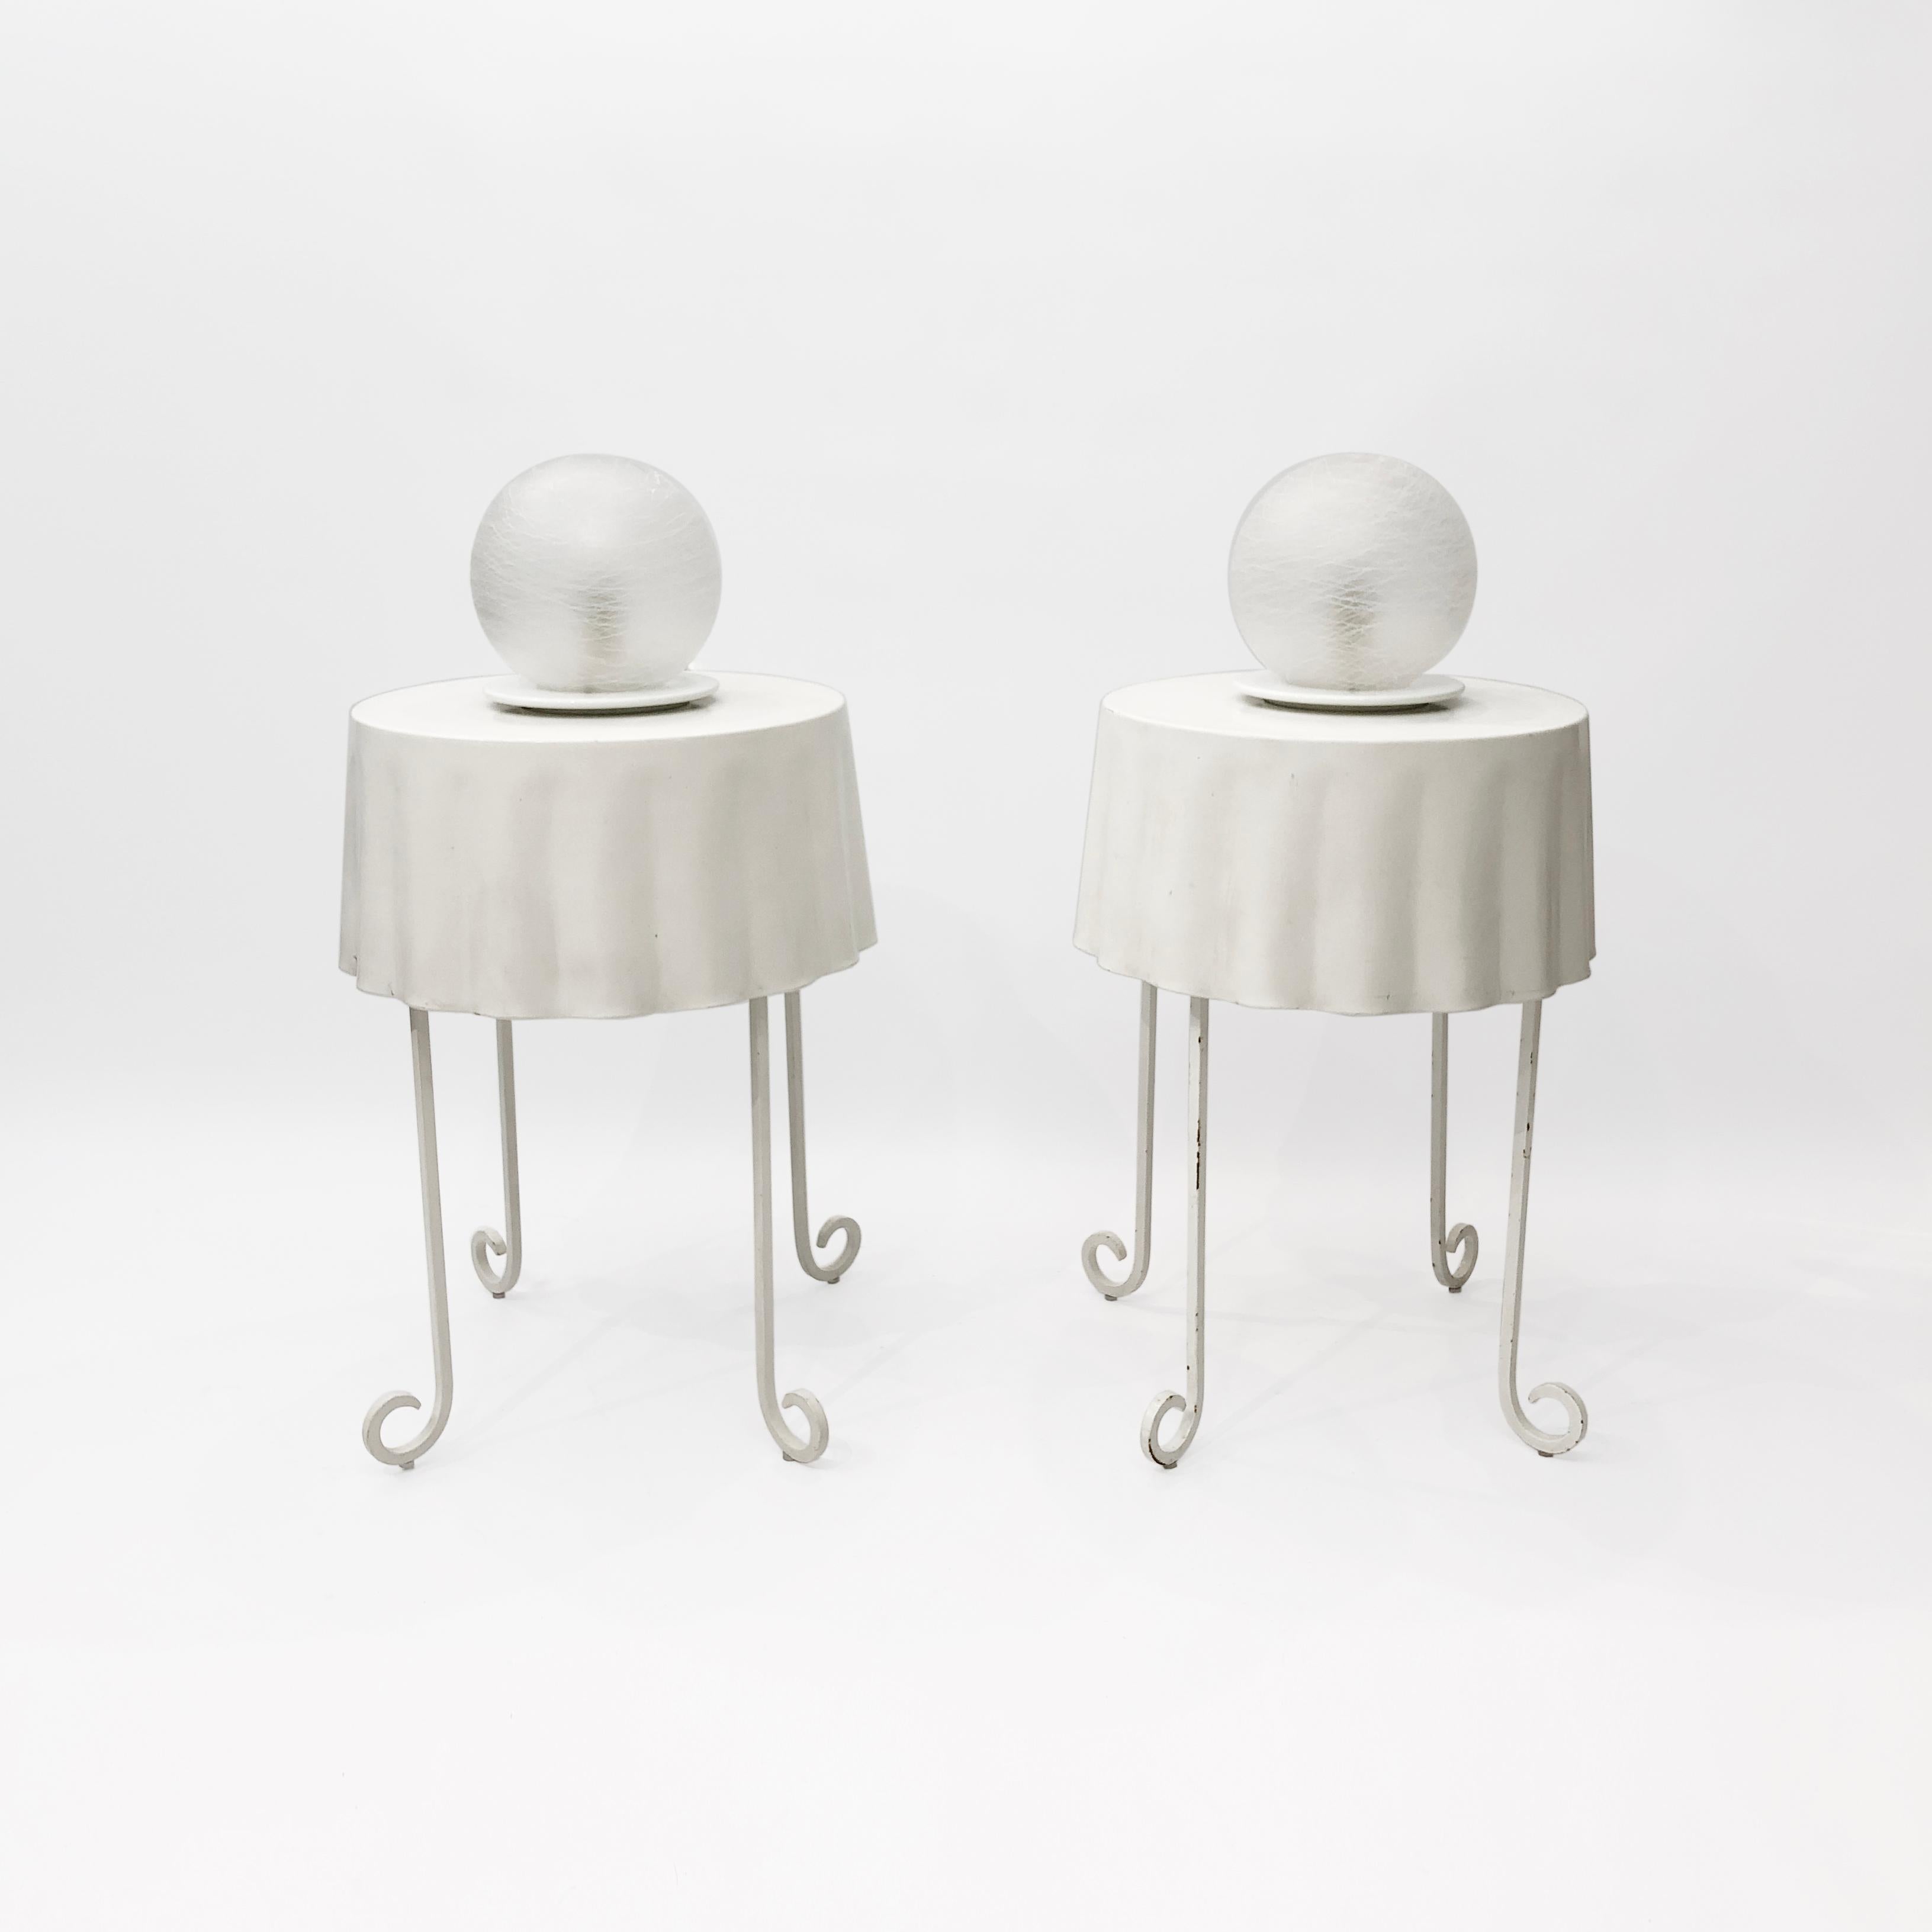 Paire de lampes de table en verre de Murano, blanches et sphériques, originaires d'Italie dans les années 1970. Chaque lampe se compose d'un orbe en verre dépoli posé sur un socle en métal peint par poudrage en blanc. Le verre a été soufflé à la